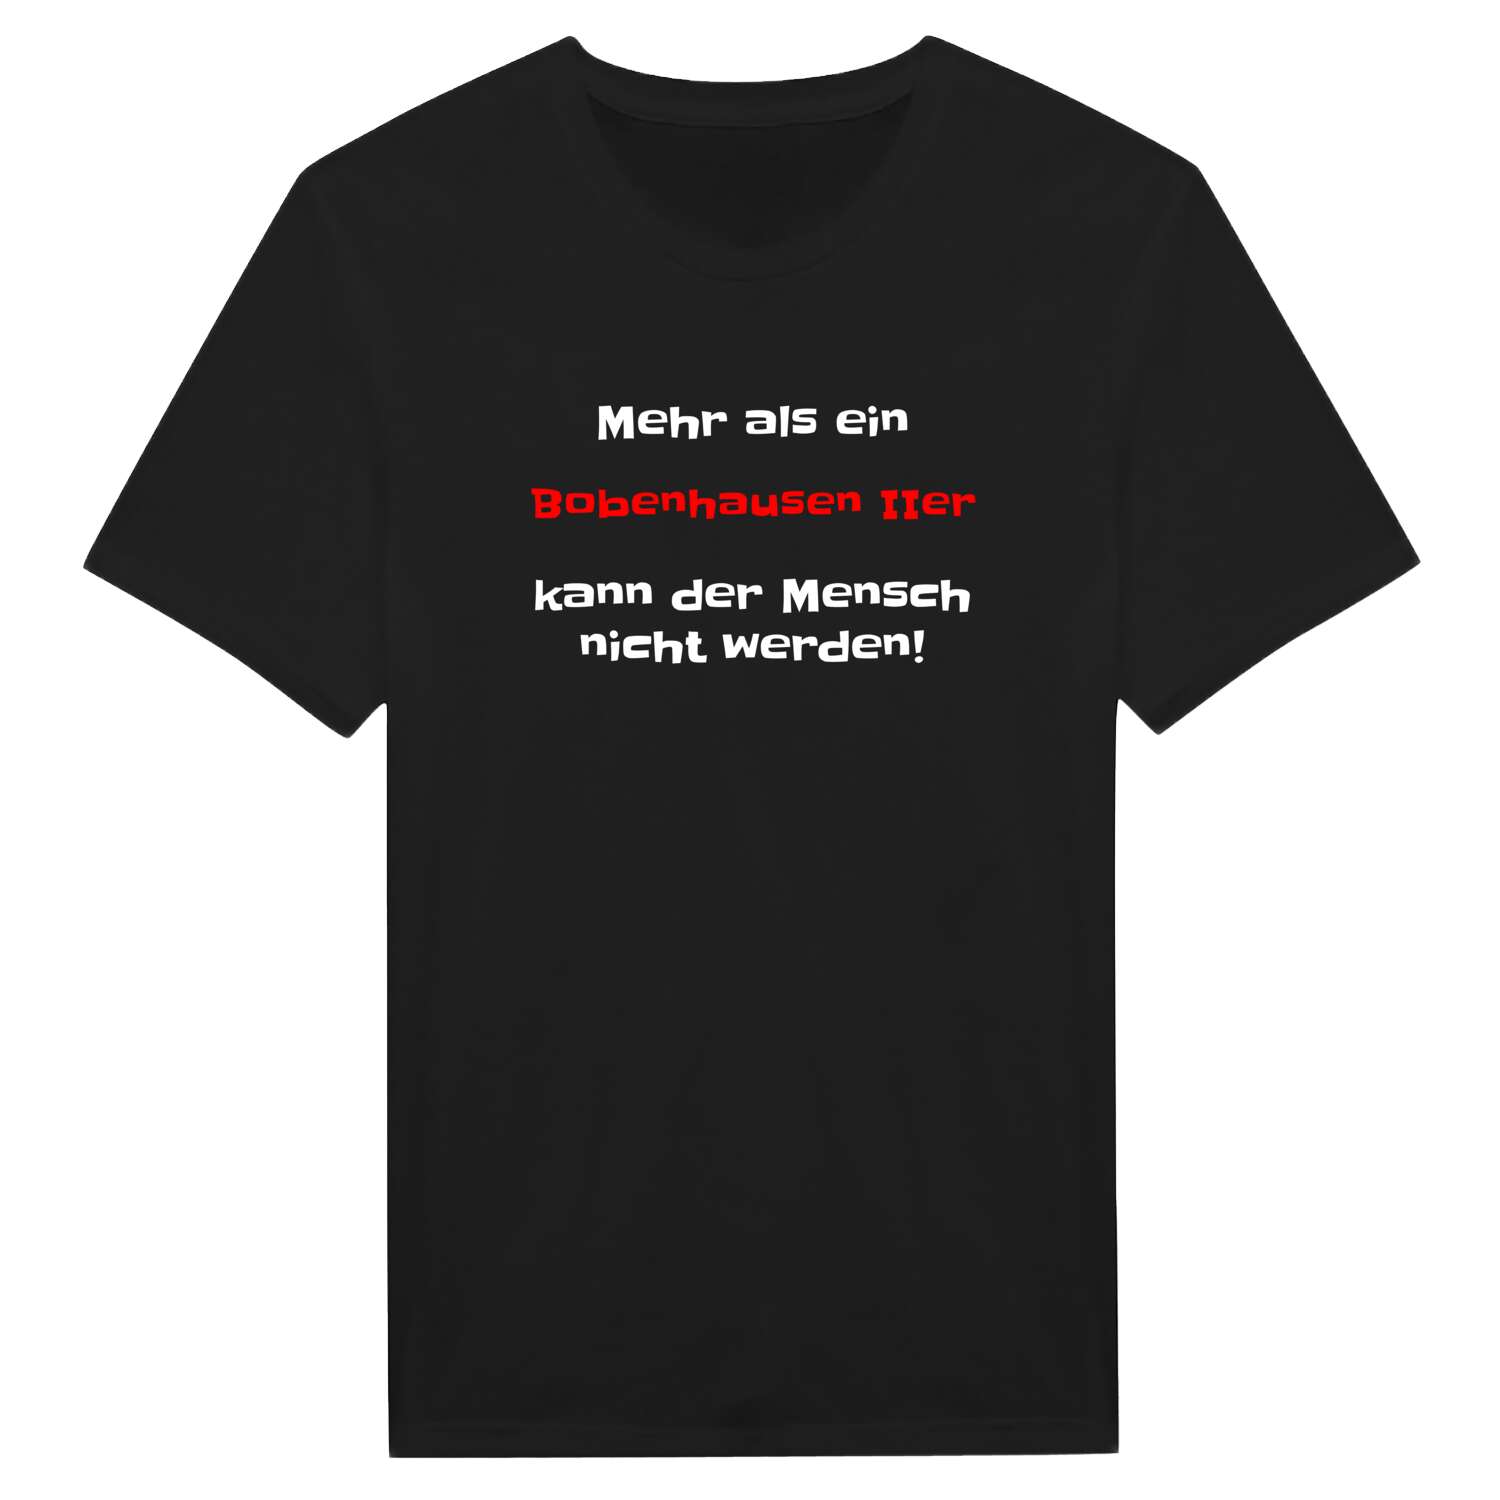 Bobenhausen II T-Shirt »Mehr als ein«